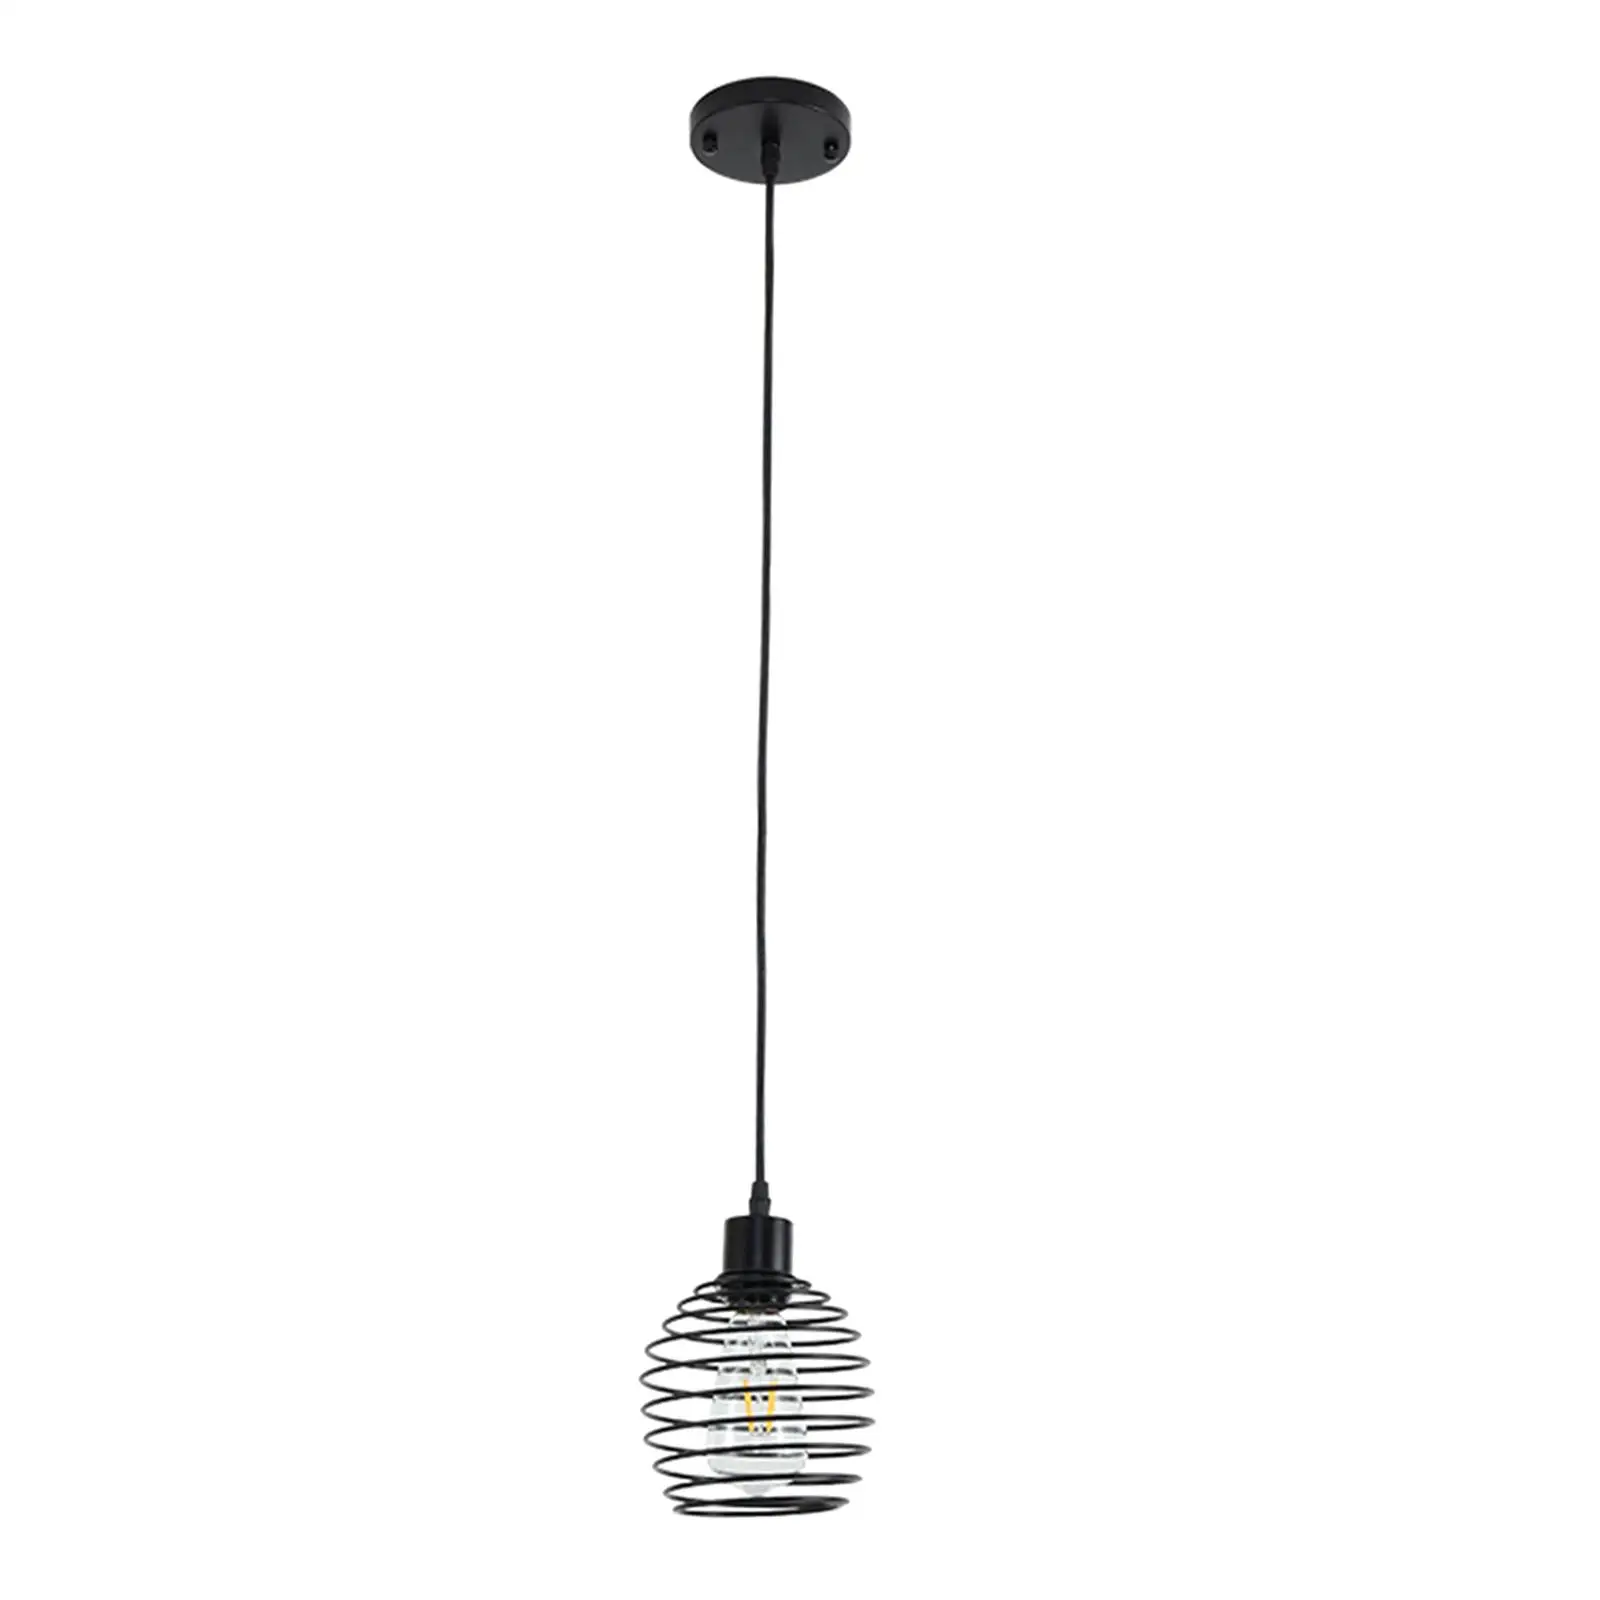 Nordic Celling Light Lamp Pendent Light E27 for Office Restaurant Decoration